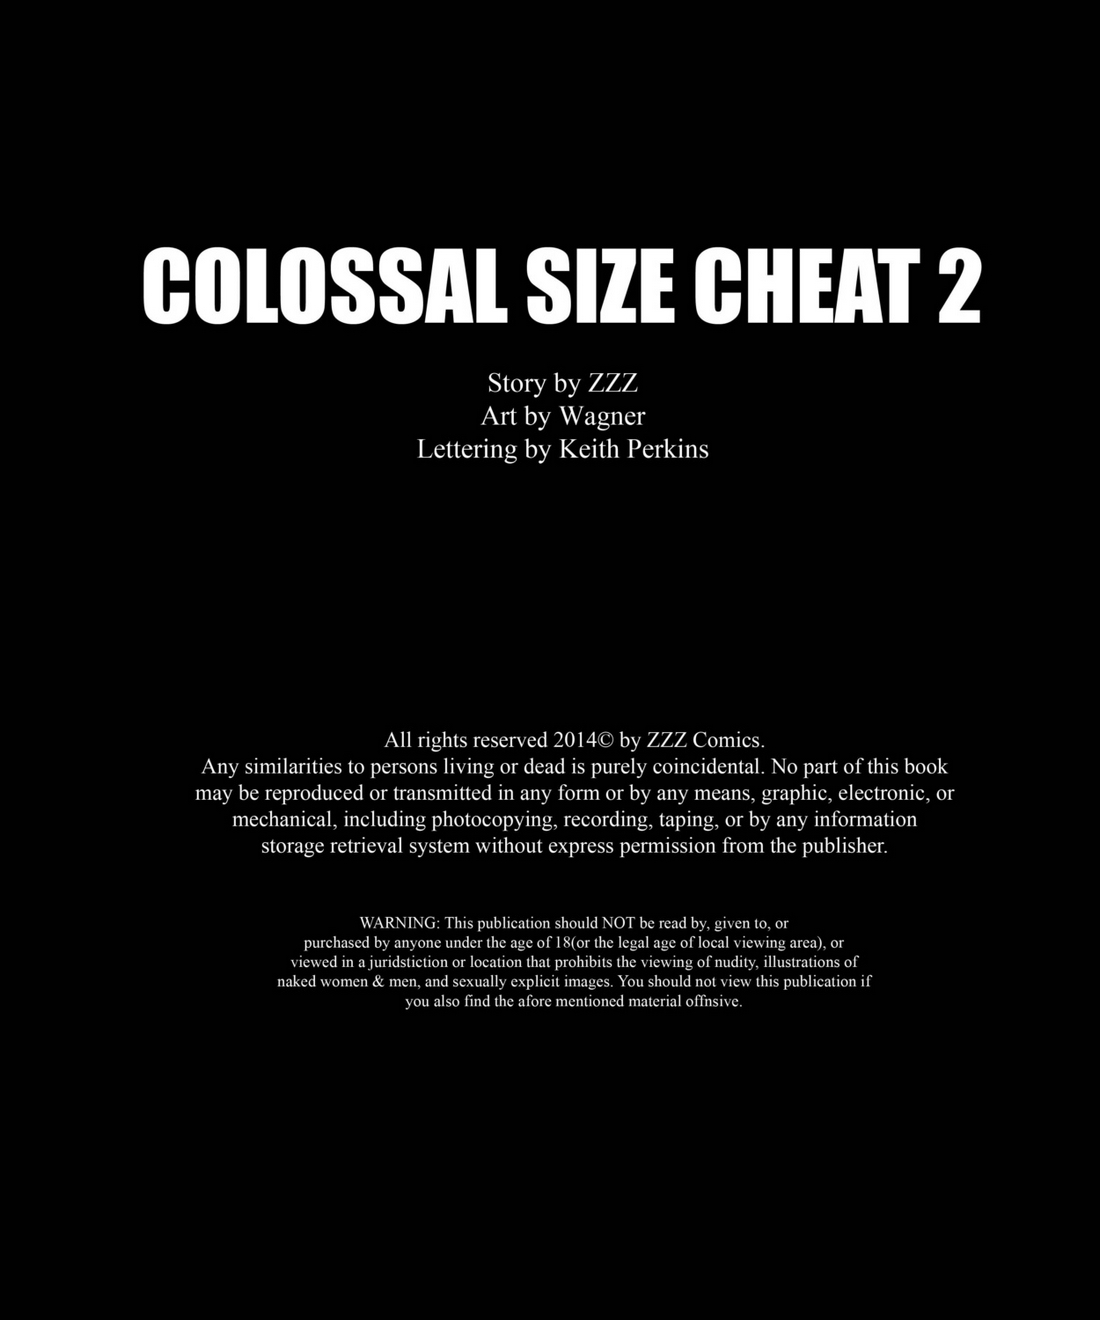 zzz colossale Dimensioni cheat 2